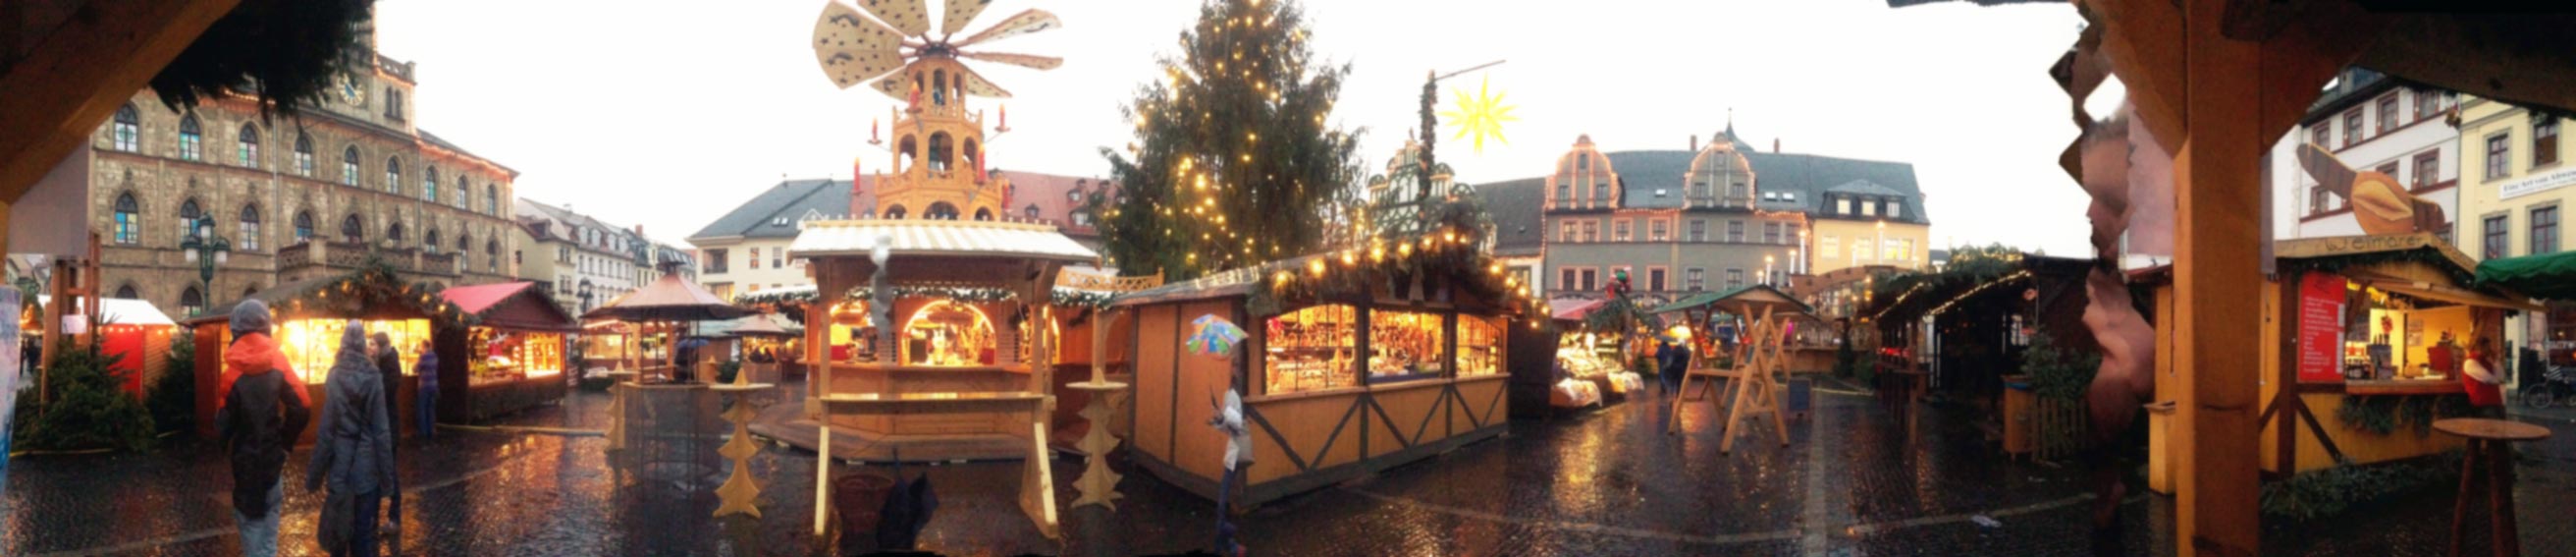 Kulturstadt Weimar mit Weihnachtsmarkt. Foto: privat